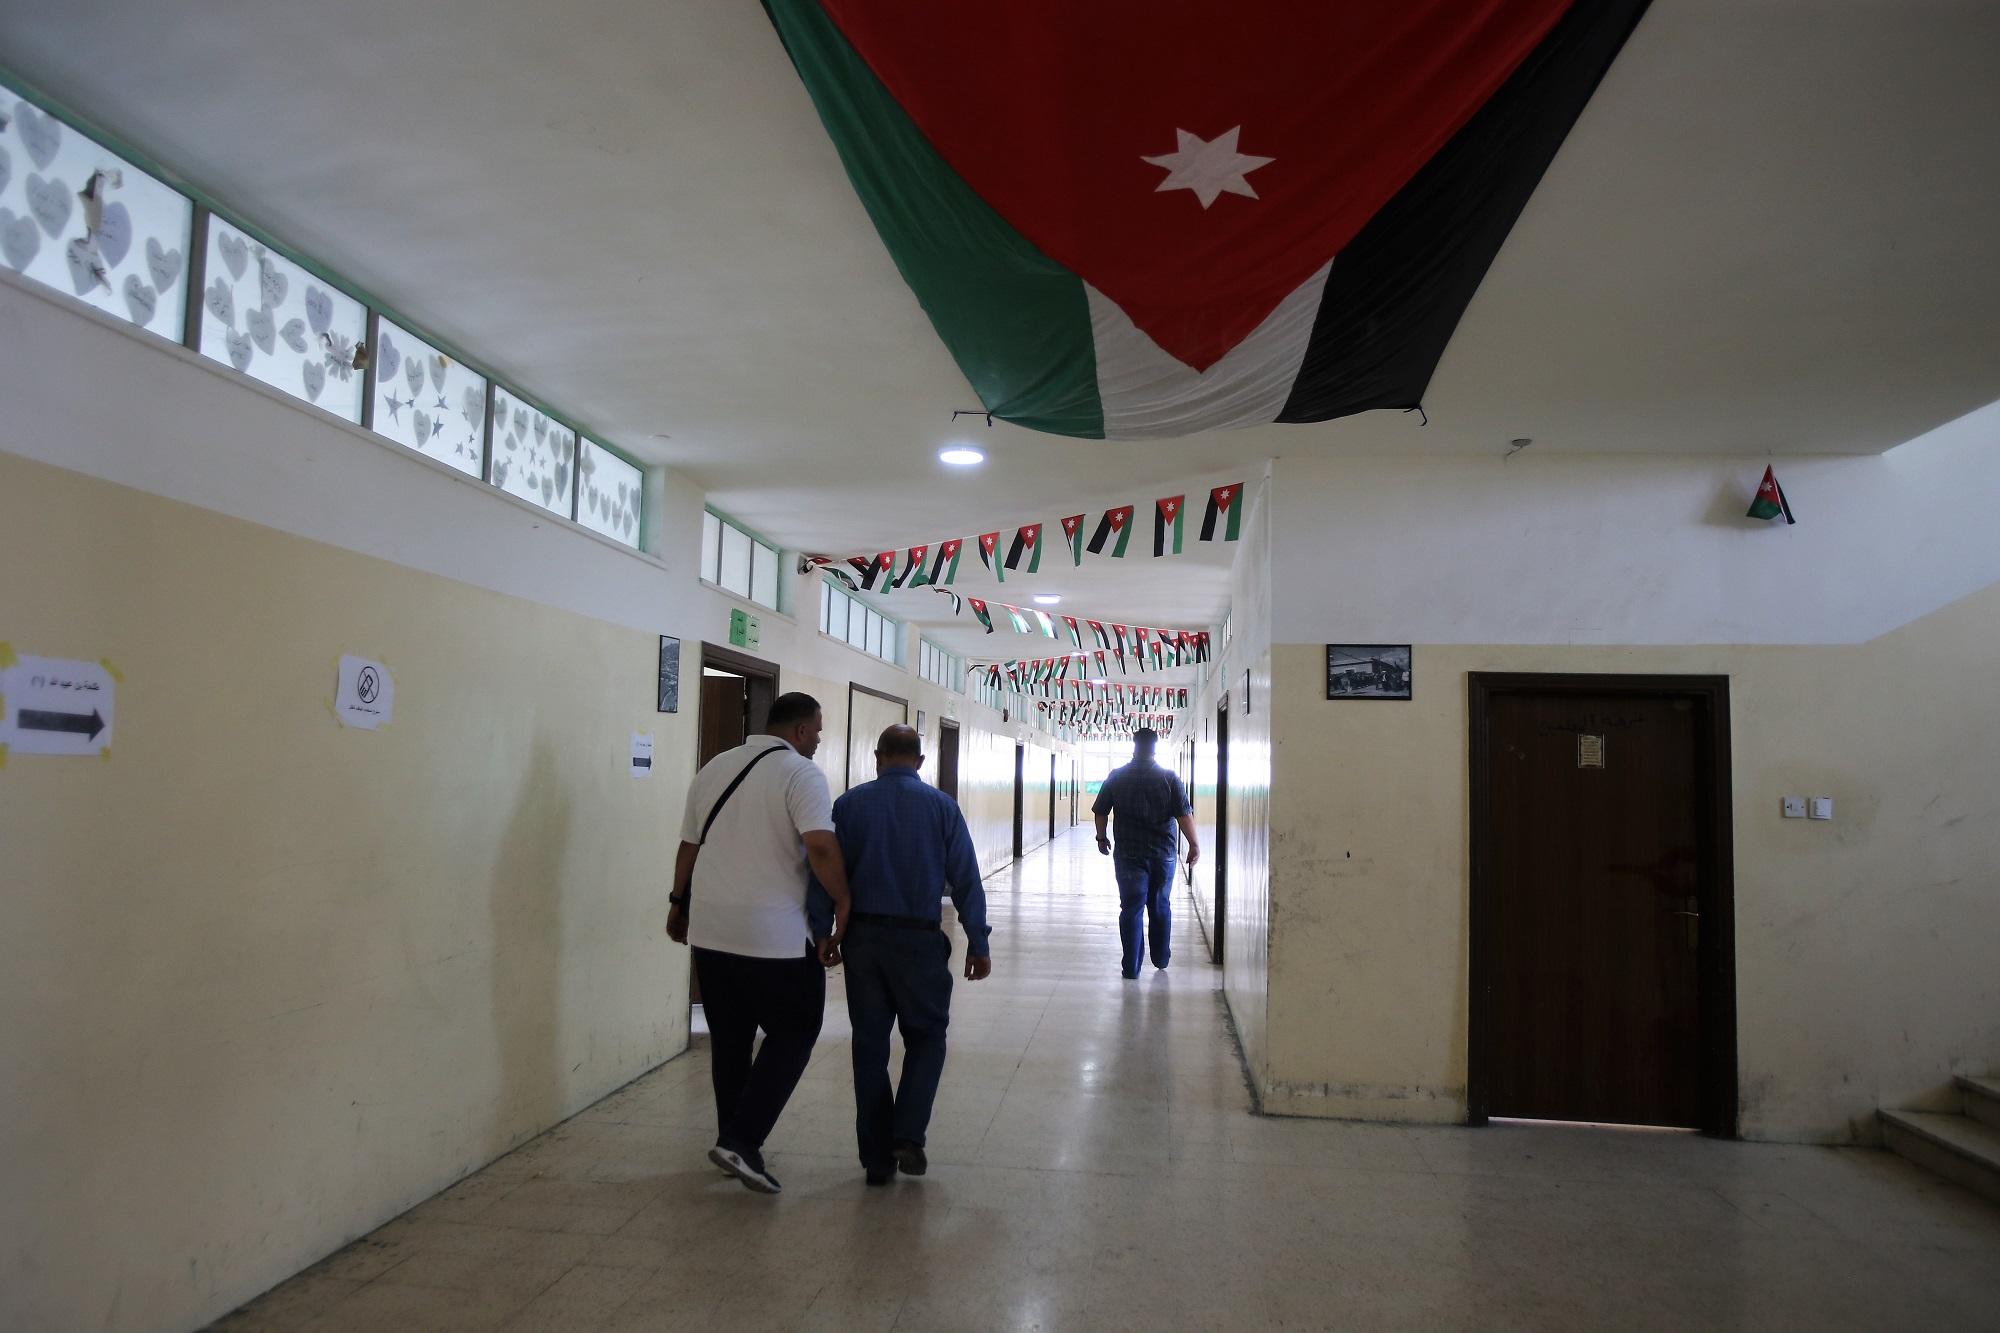 معلمون يسيرون في ممر بين غرف صفية في مدرسة حكومية خلال إضرابهم. (صلاح ملكاوي/ المملكة)